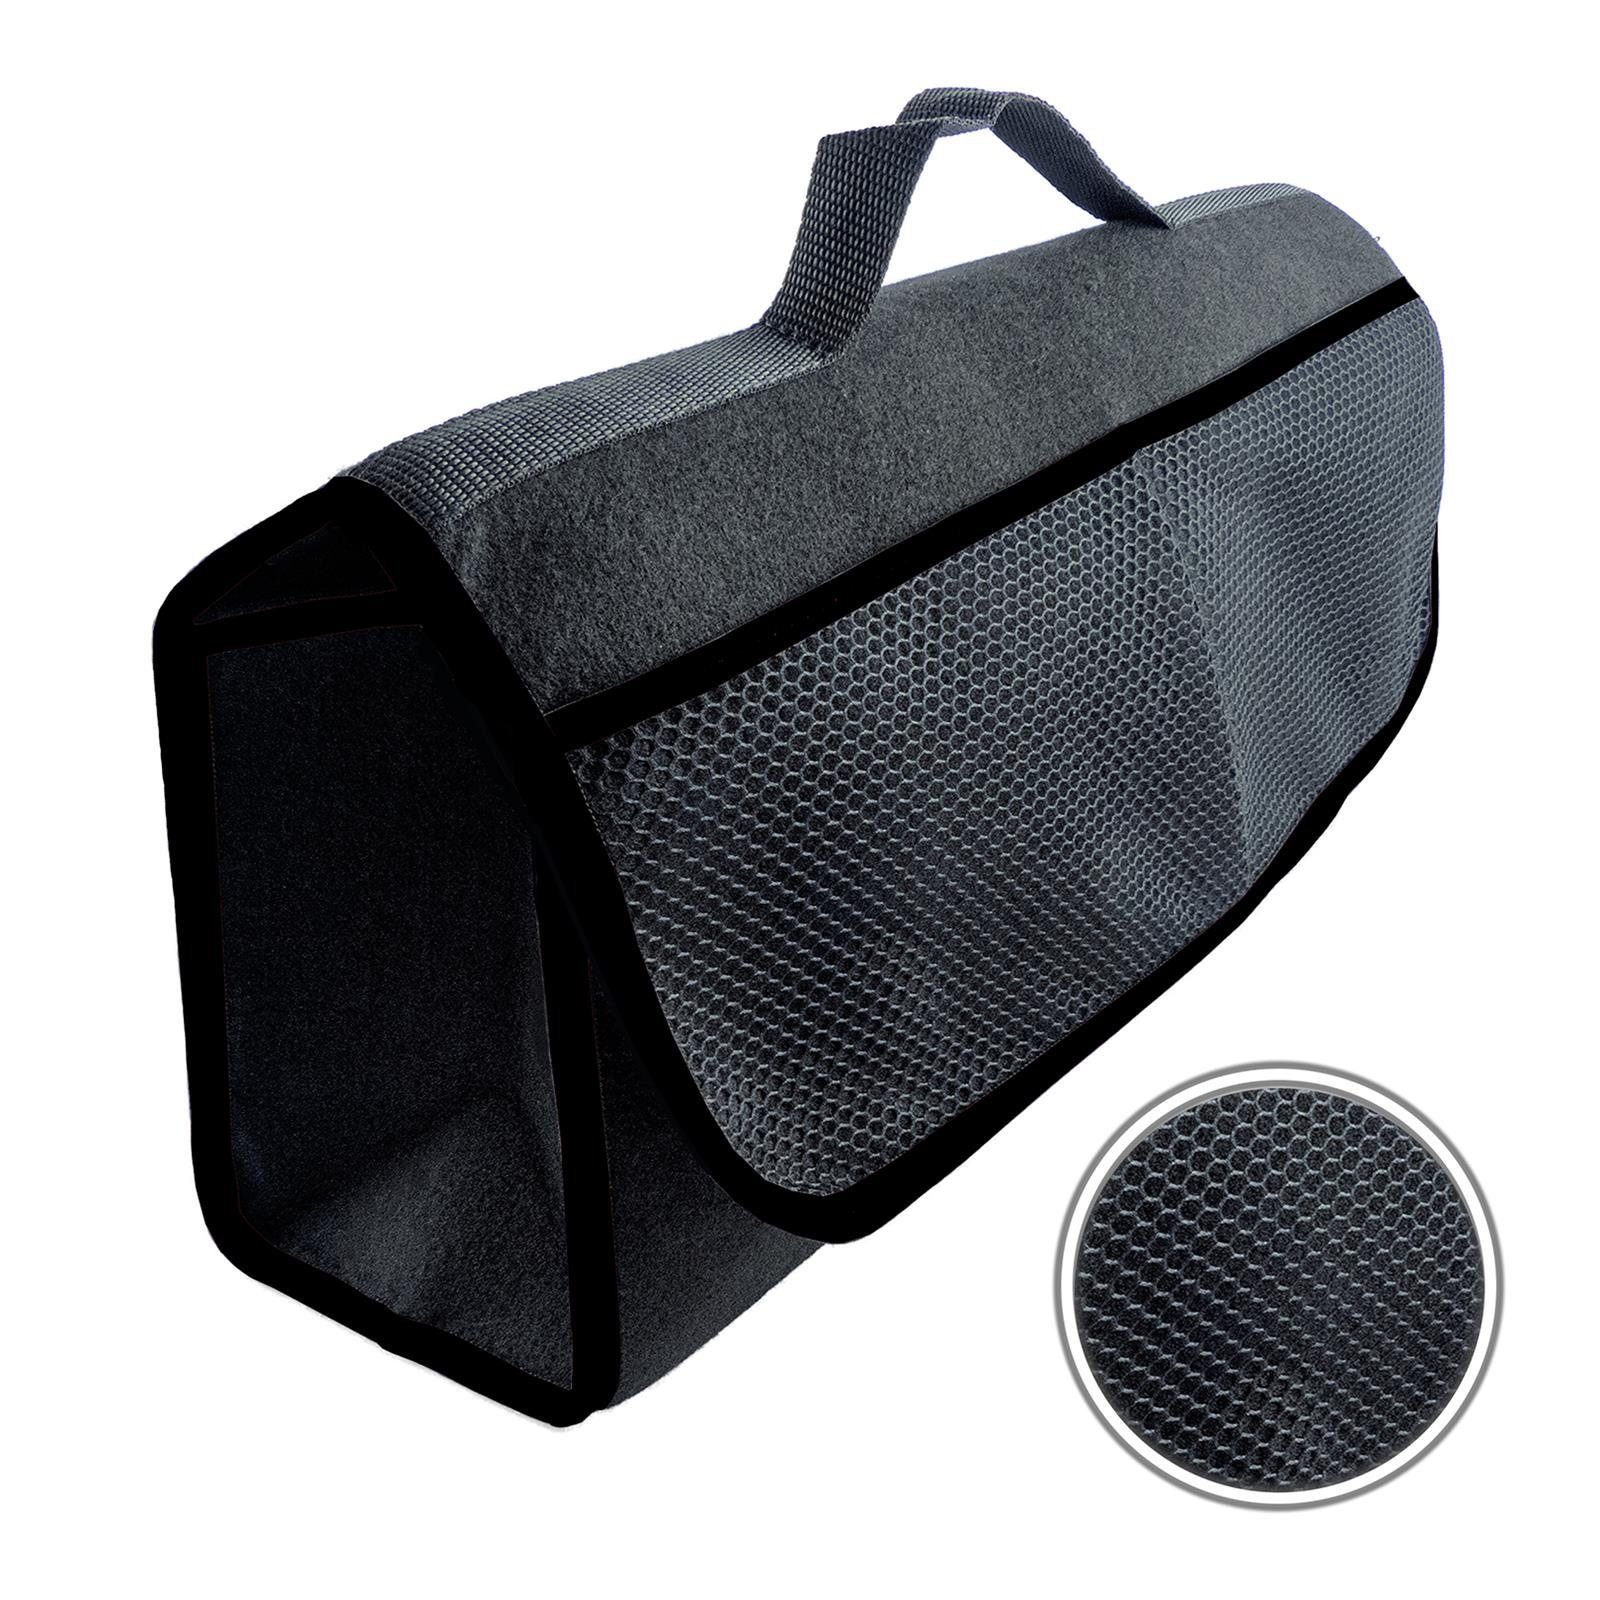 L & P in Auto Kofferraumtasche Saum Car farbigem schwarz Organizer Design mit